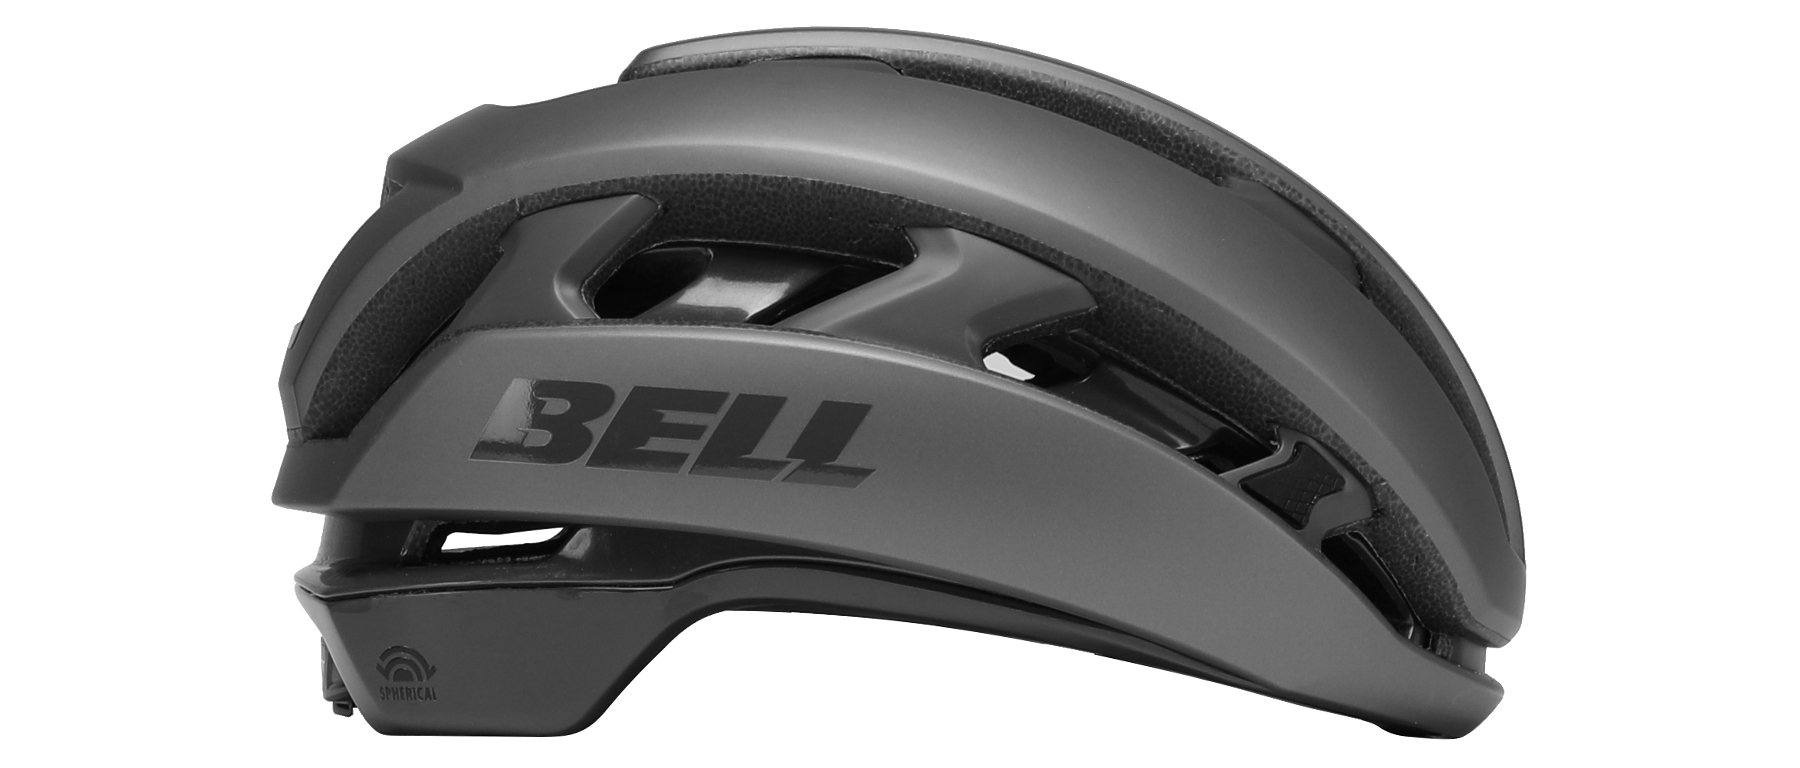 Bell XR Spherical Helmet